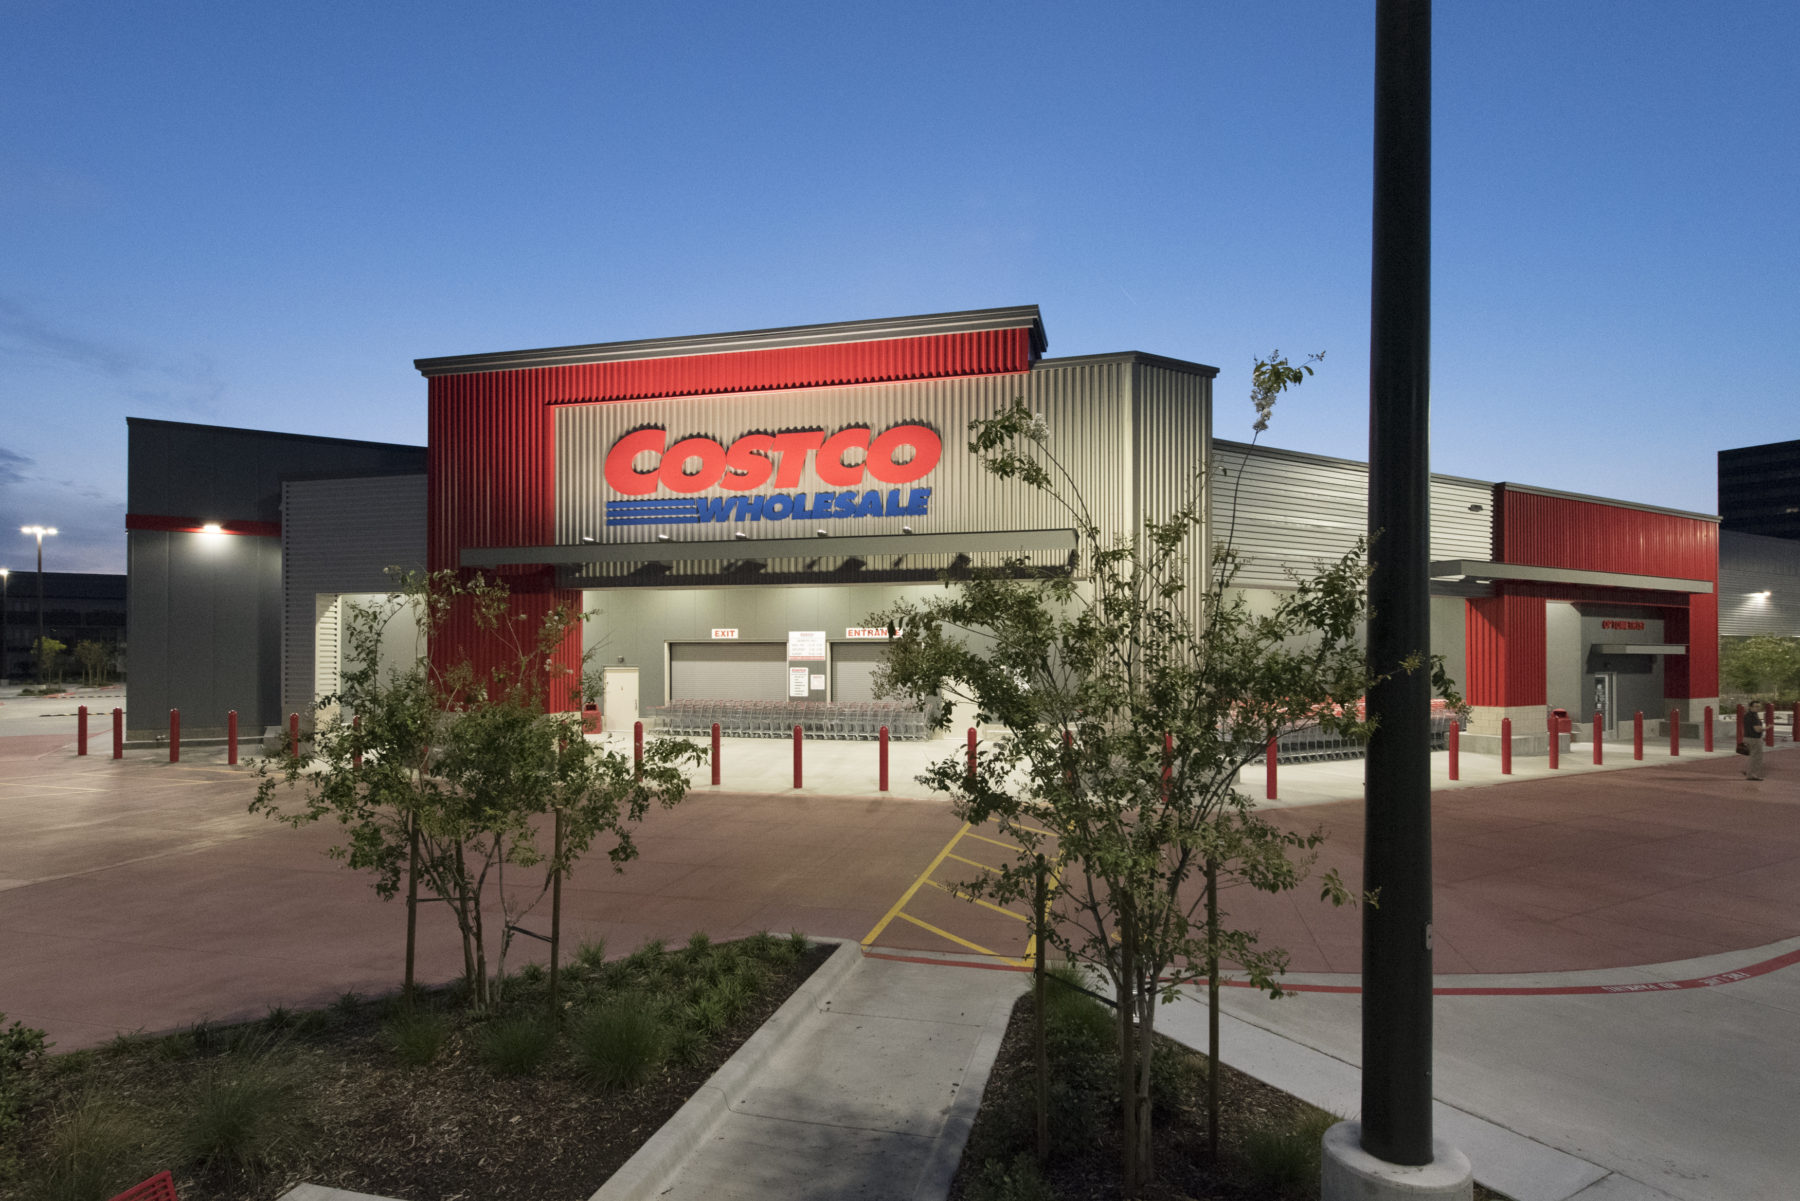 Costco Wholesale - Dallas, TX - Robinson Construction Co.